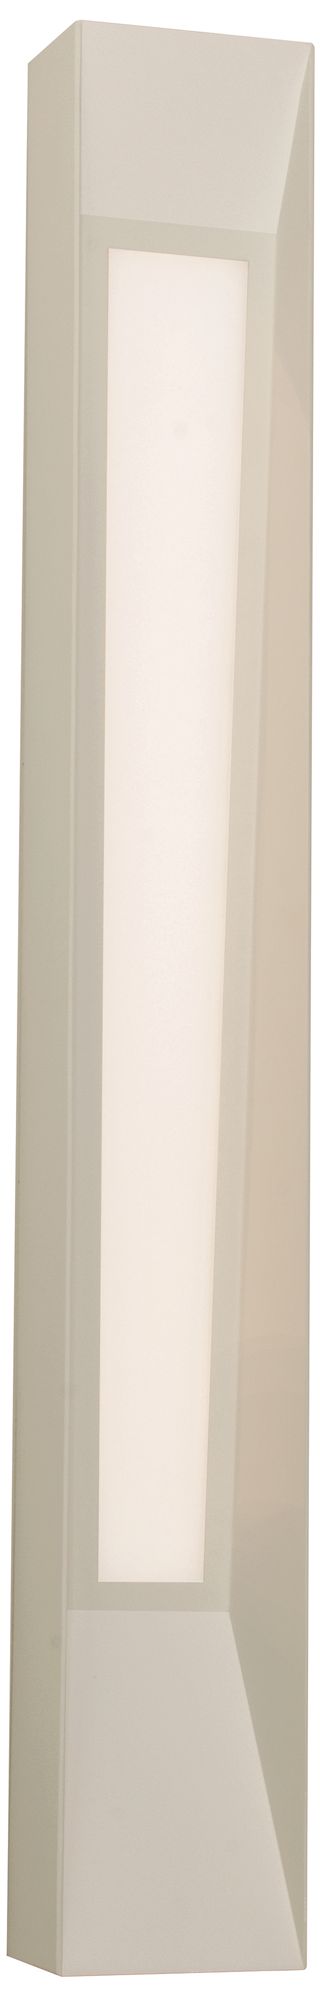 Rowan LED Sconce - 30-in - White